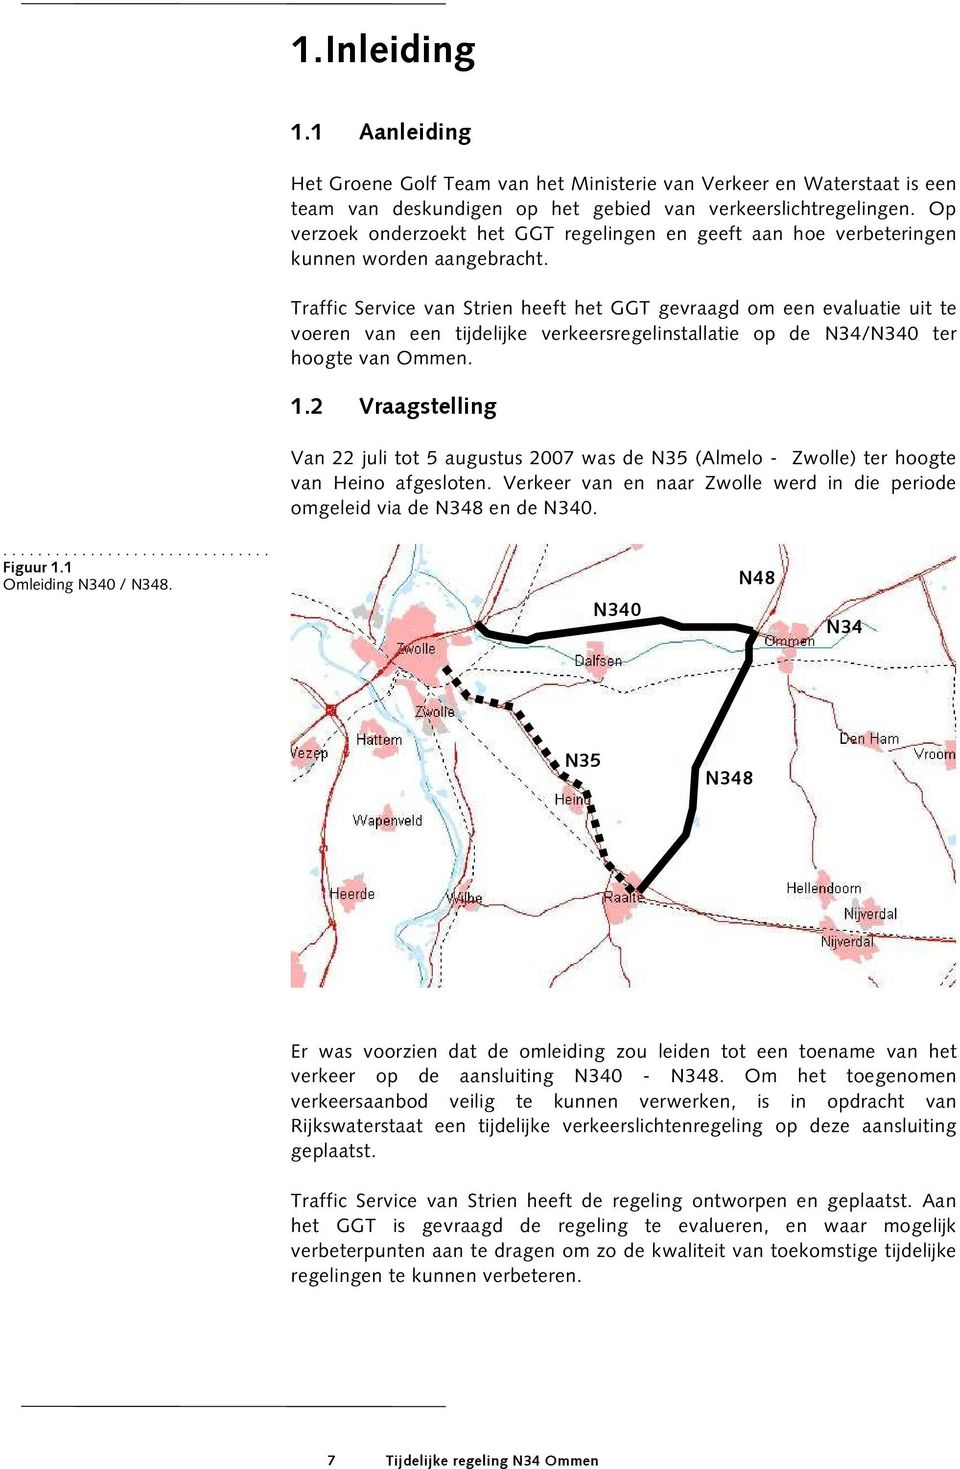 Traffic Service van Strien heeft het GGT gevraagd om een evaluatie uit te voeren van een tijdelijke verkeersregelinstallatie op de N34/N340 ter hoogte van Ommen. 1.